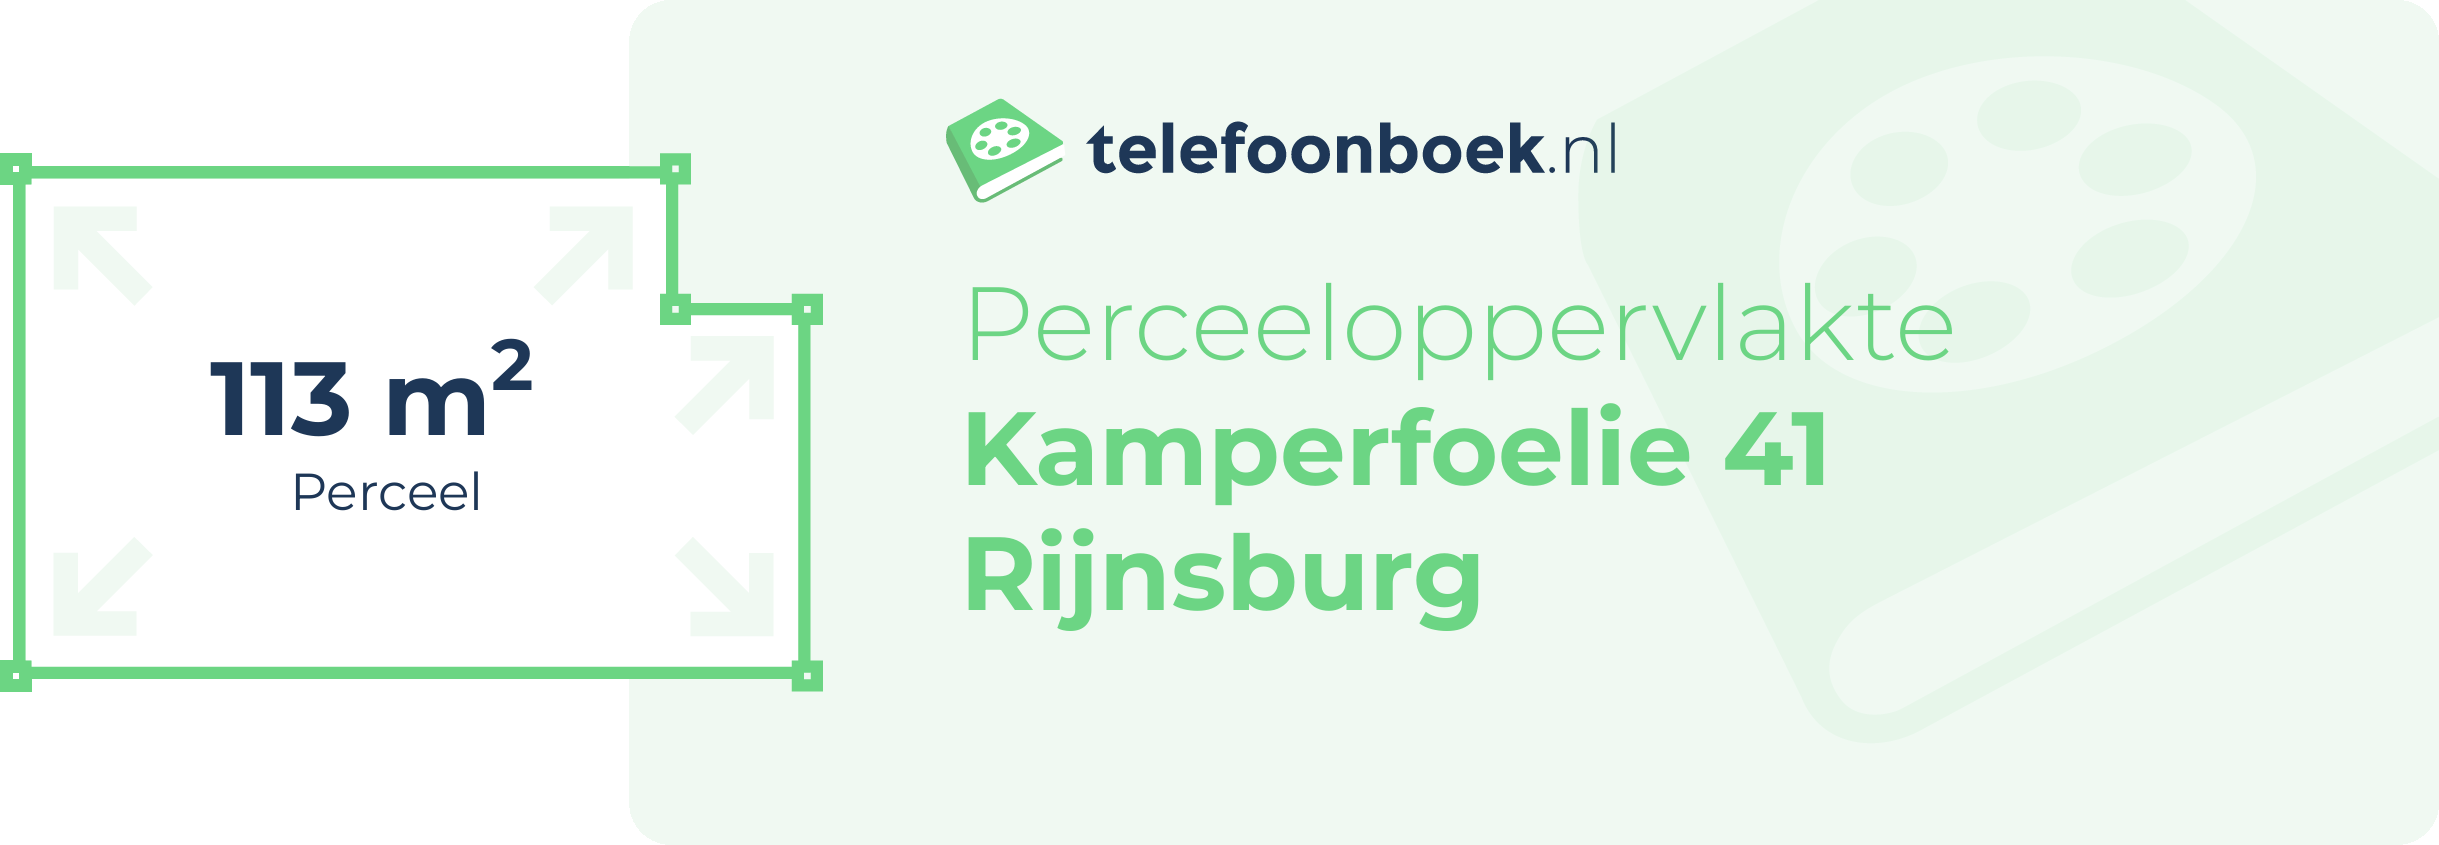 Perceeloppervlakte Kamperfoelie 41 Rijnsburg